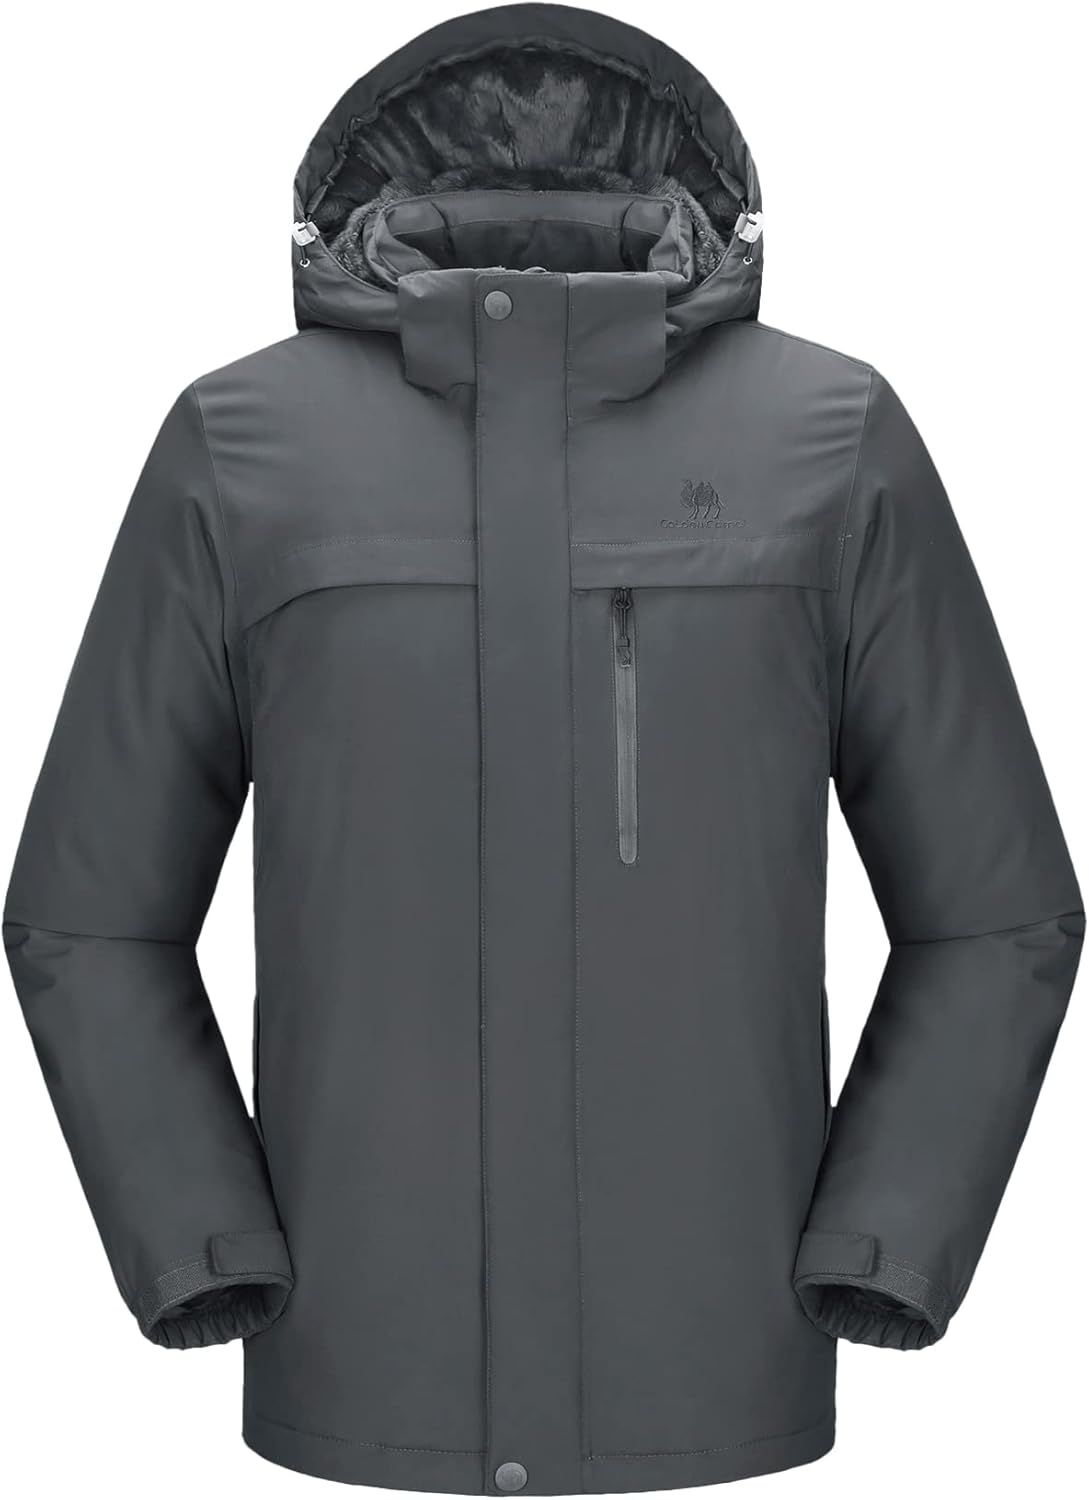 GOLDEN CAMEL Men's Insulated Ski Jacket Versatility Winter Snow Coat Detachable Hood Waterproof W... | Amazon (US)